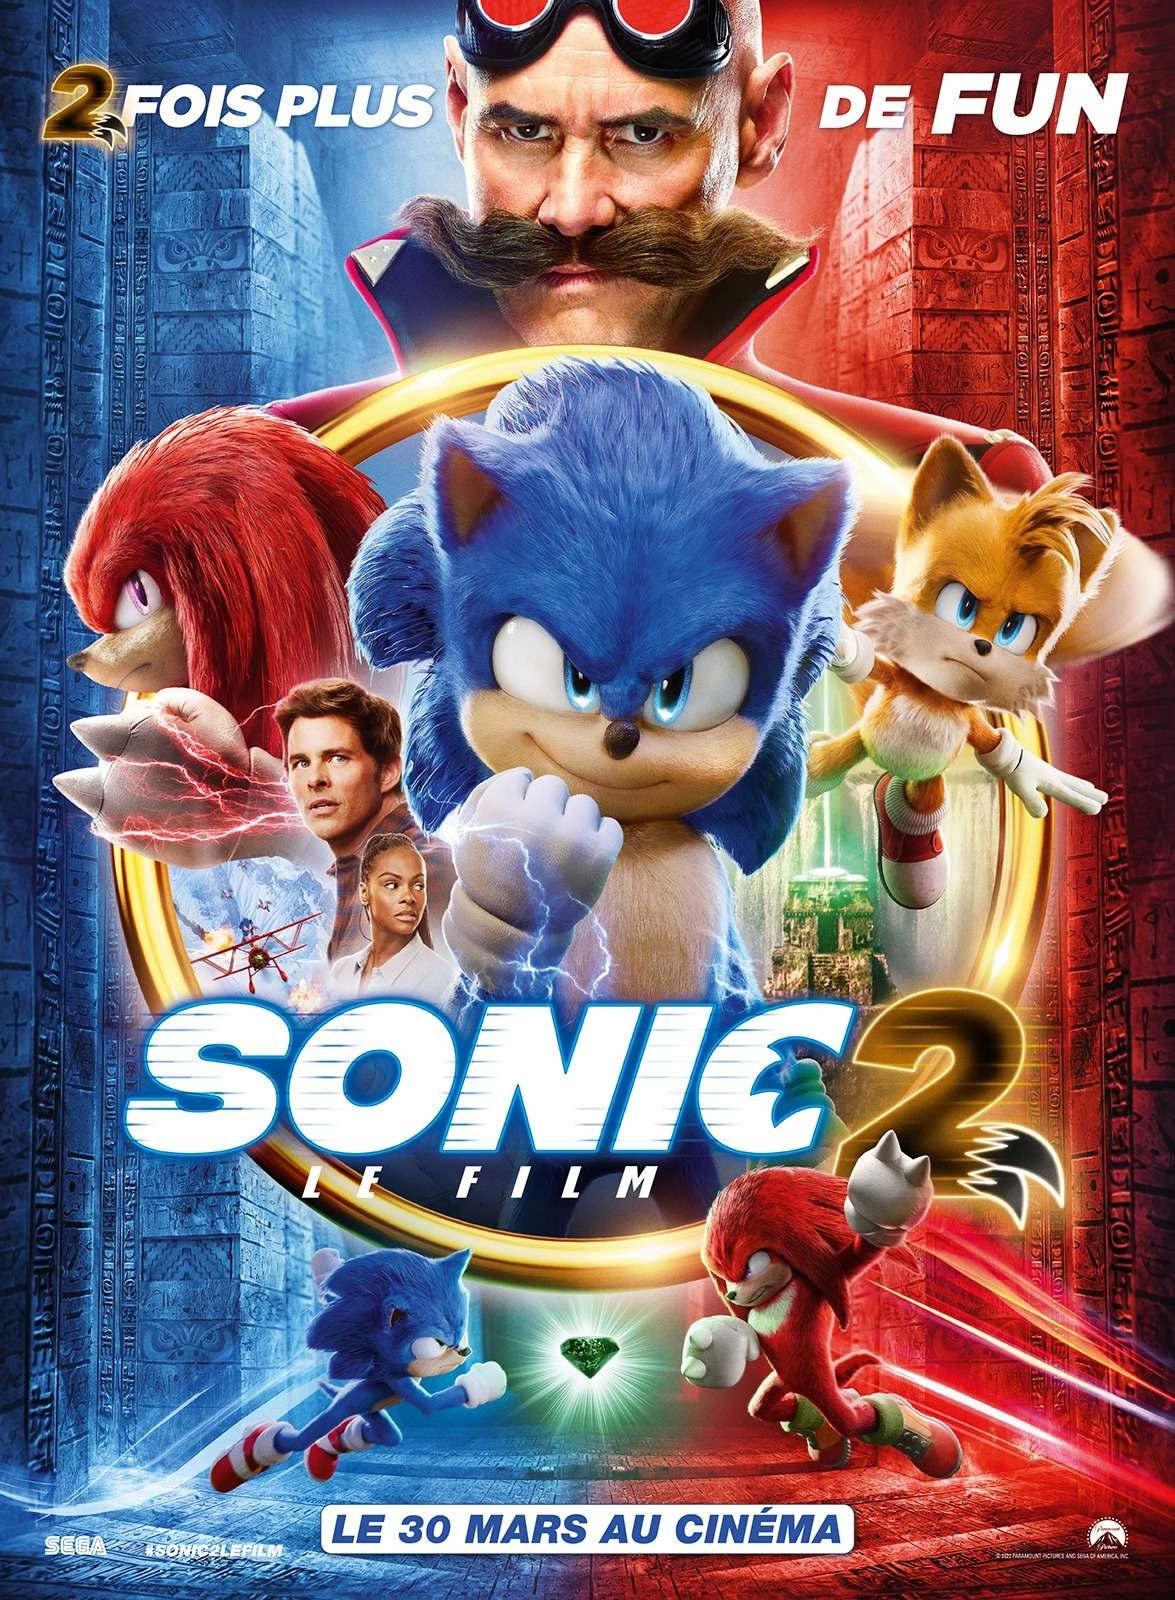 L'affiche du film Sonic 2, le 30 mars au cinéma.